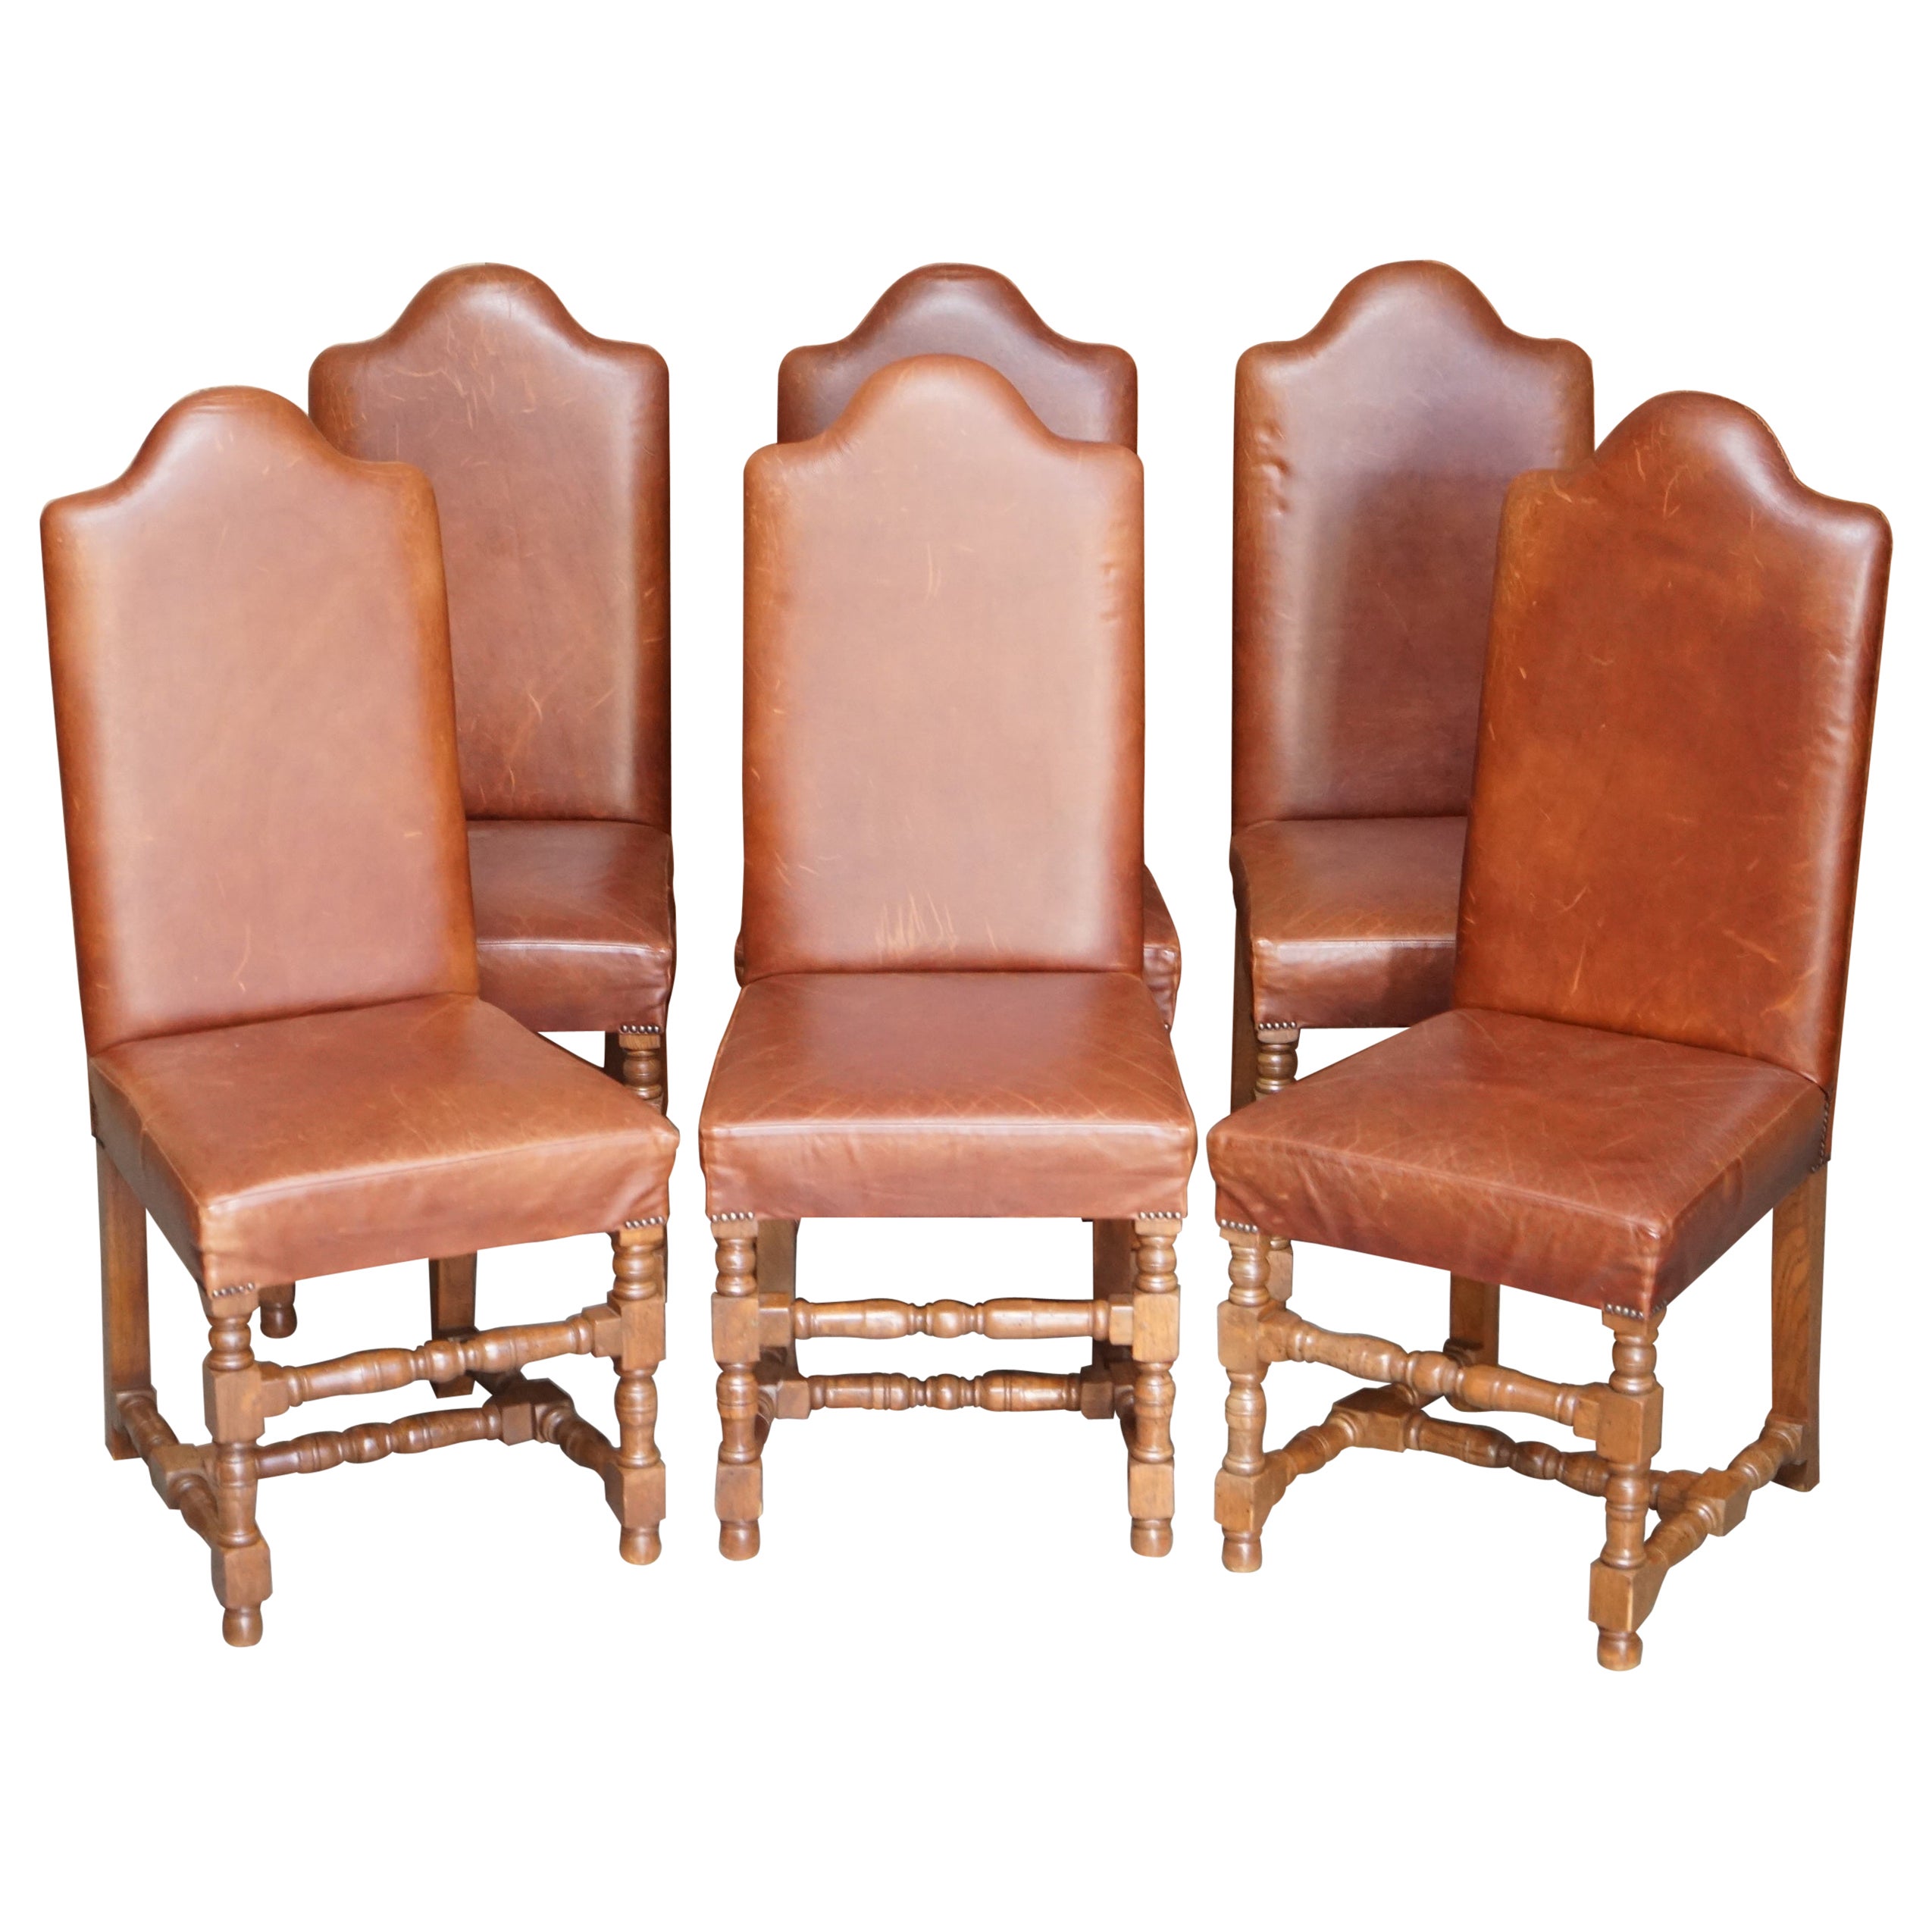 Suite de six chaises de salle à manger Cromwellian à haut dossier en chêne ancien et cuir héritage